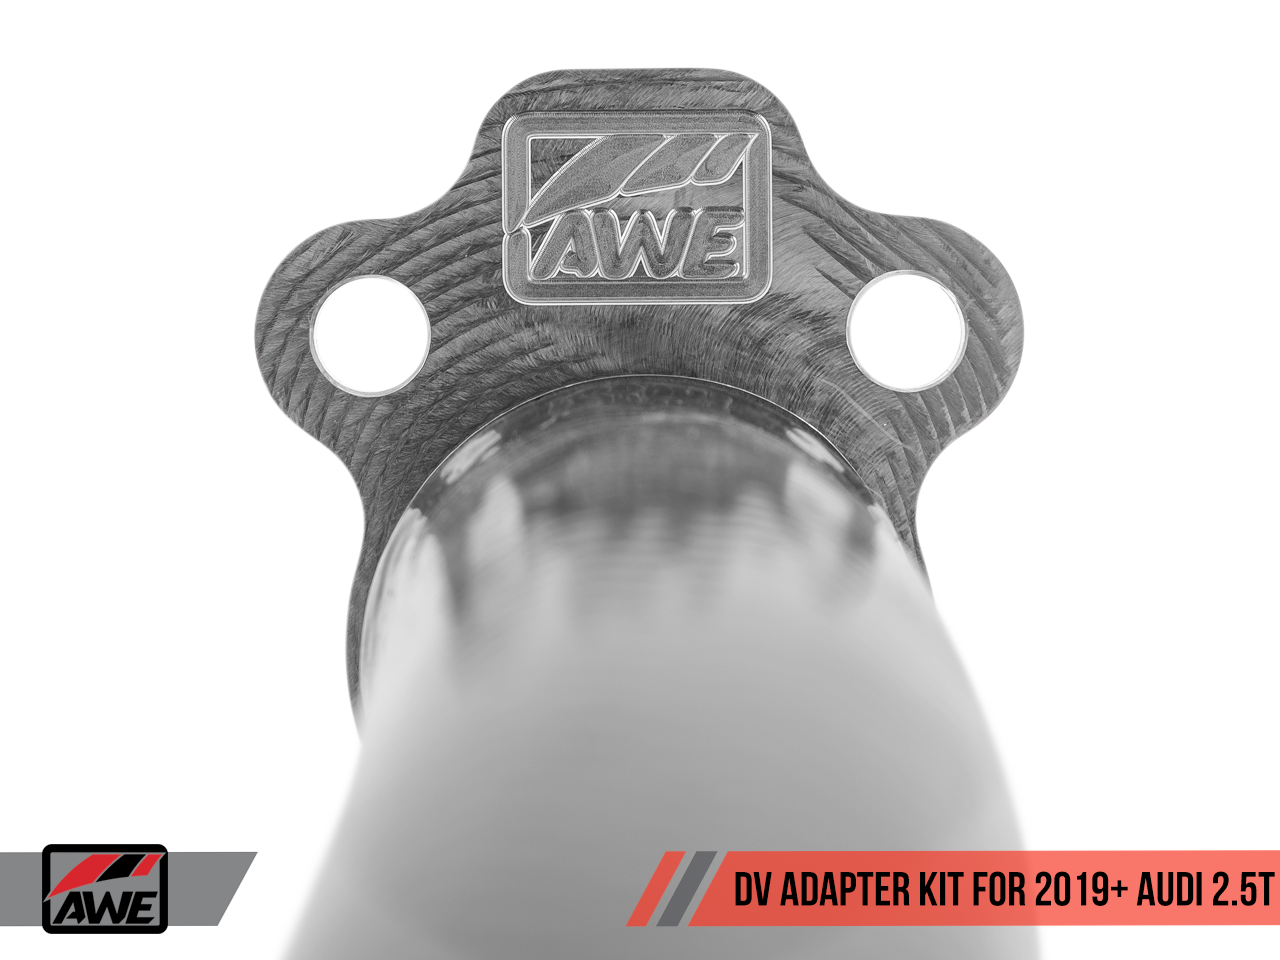 AWE DV Adapter Kit for 2019+ Models